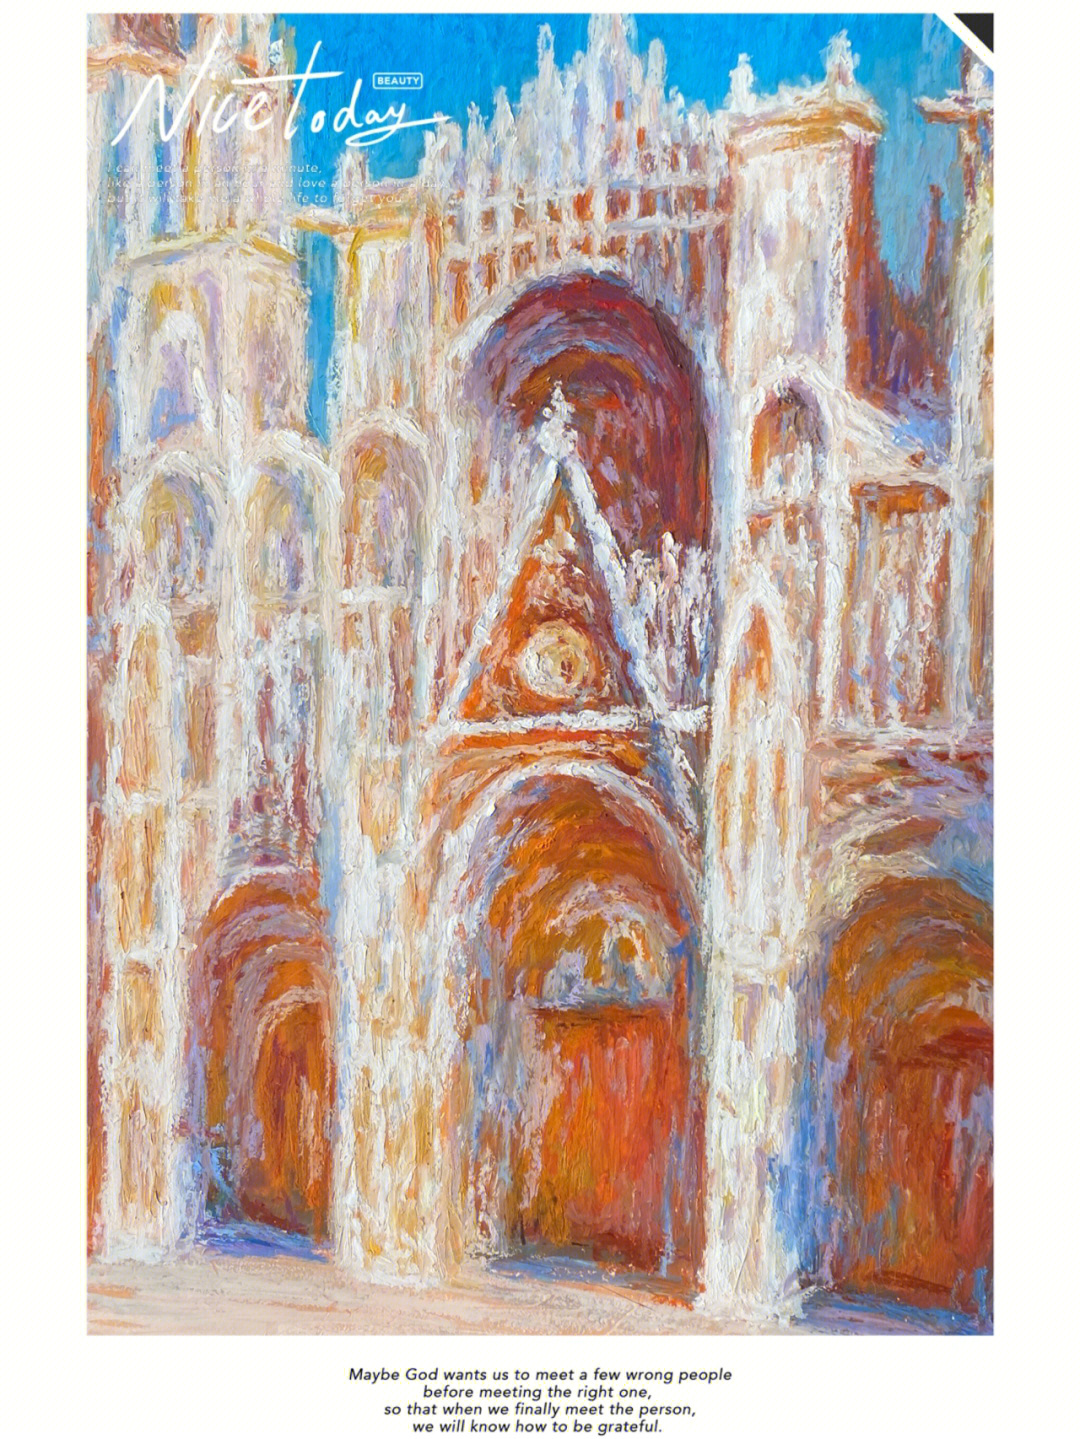 莫奈浮翁大教堂图片